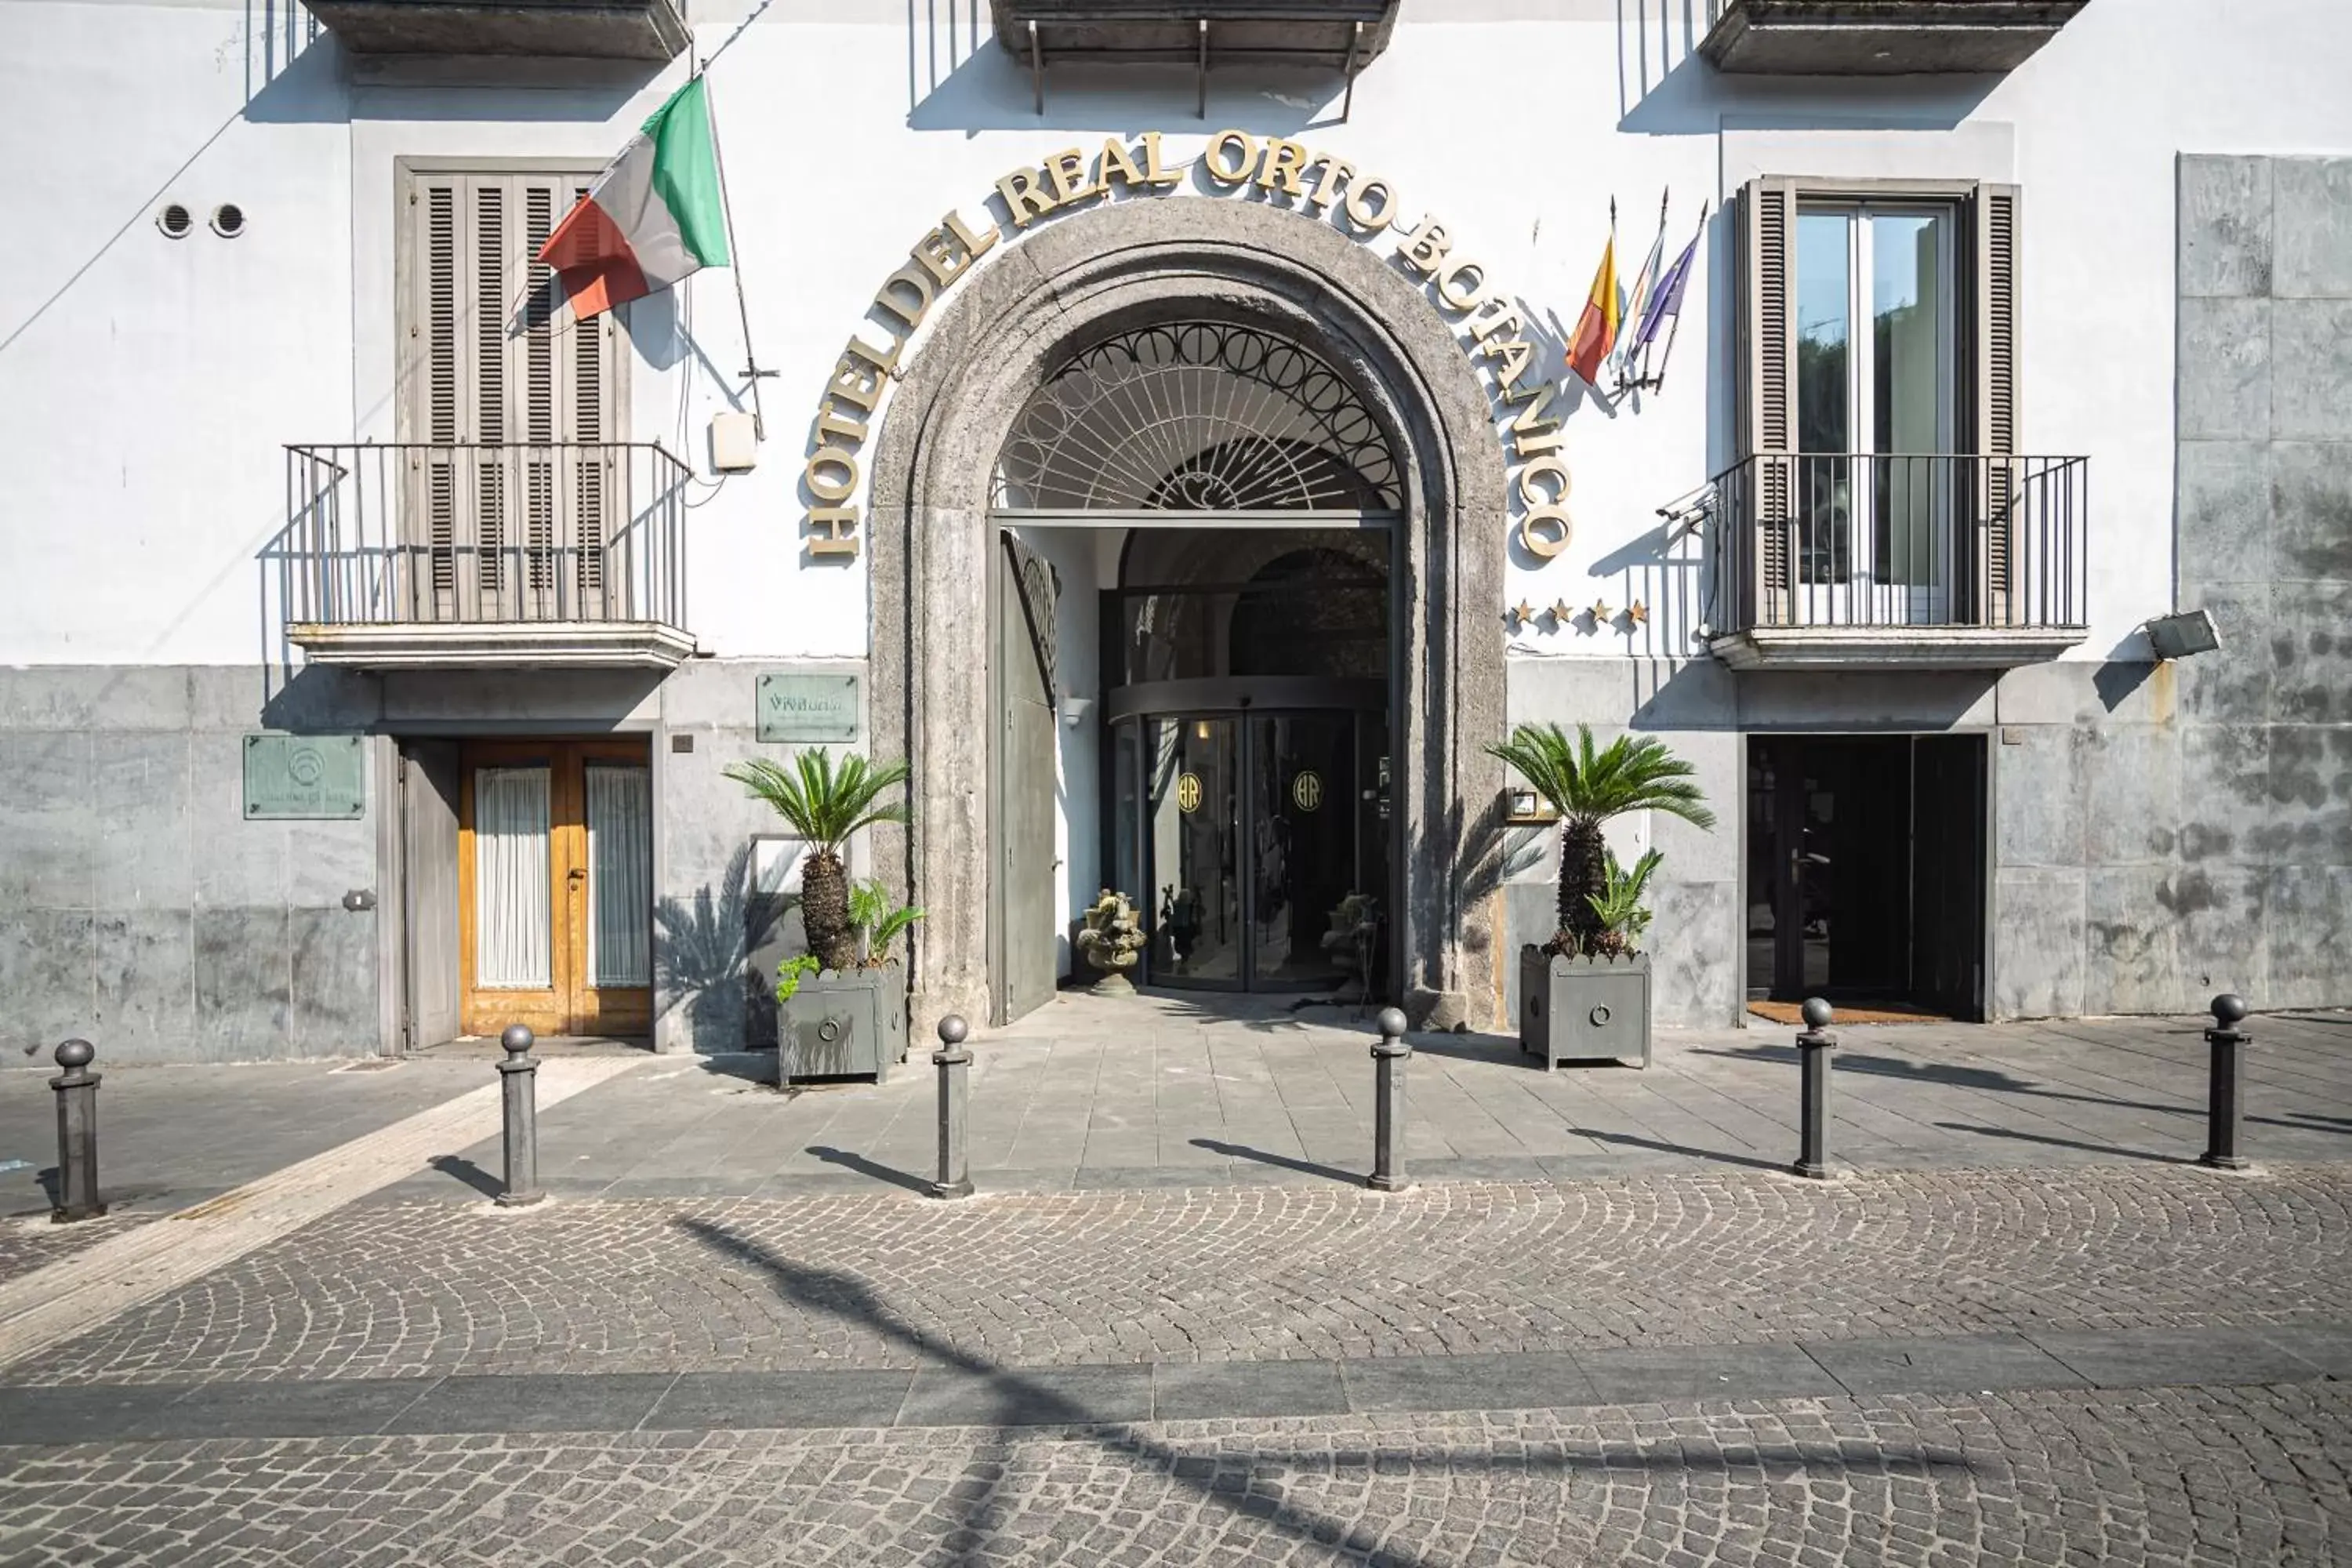 Facade/entrance in Hotel del Real Orto Botanico